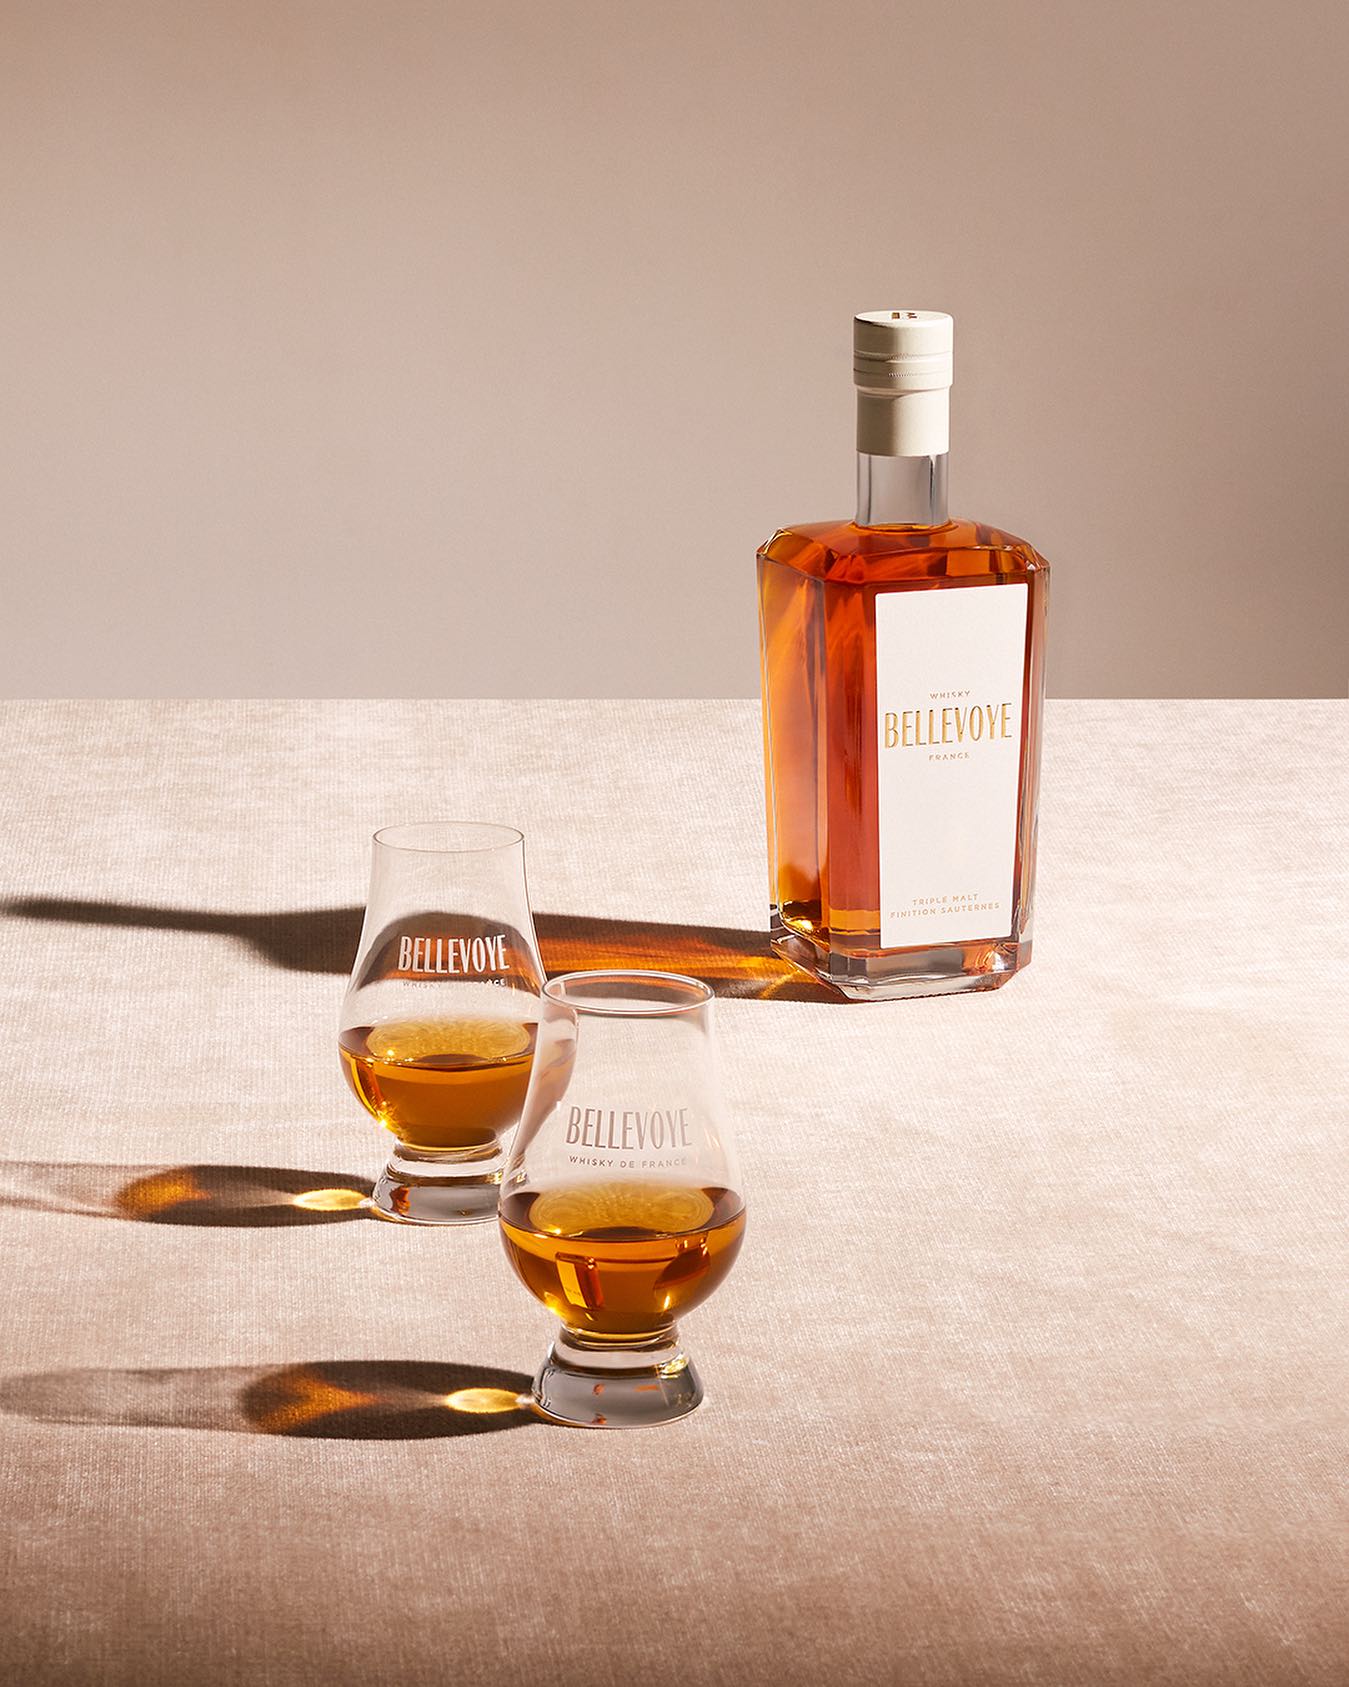 Le whisky français Bellevoye choisit Romance pour accompagner son développement en France et à l’international